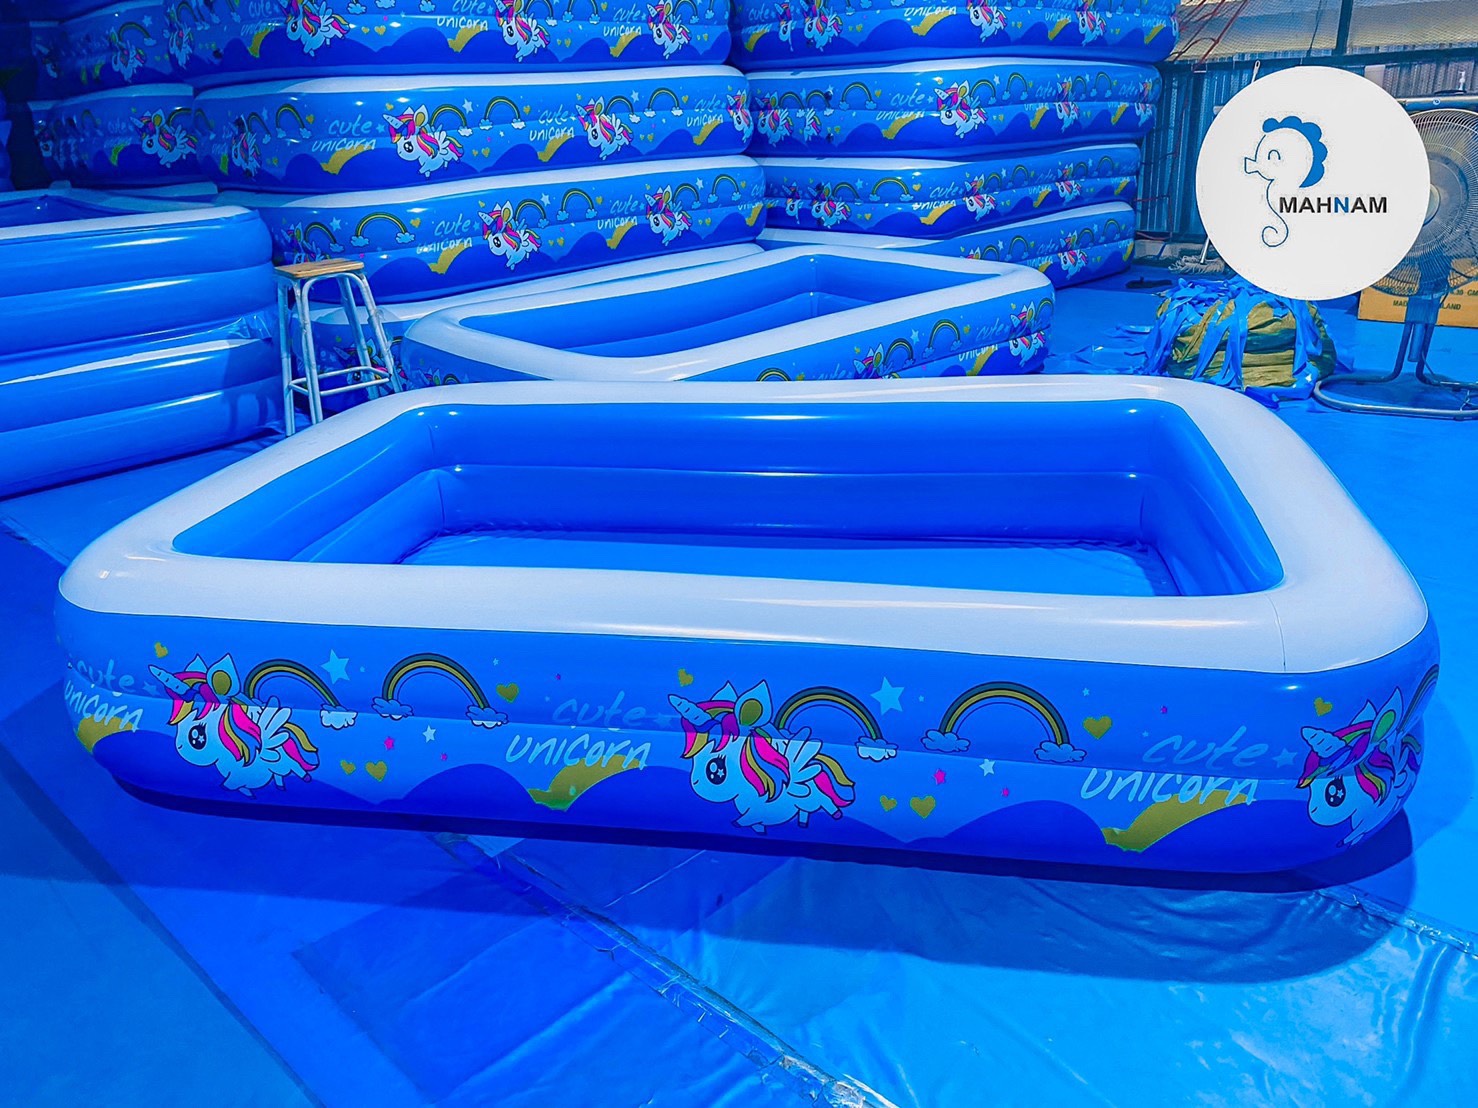 สระน้ำเป่าลม อ่างน้ำ สระว่ายน้ำ ลายยูนิคอนสีฟ้า ขนาด 2.62M. (2ชั้น) Mahnam ม้าน้ำ